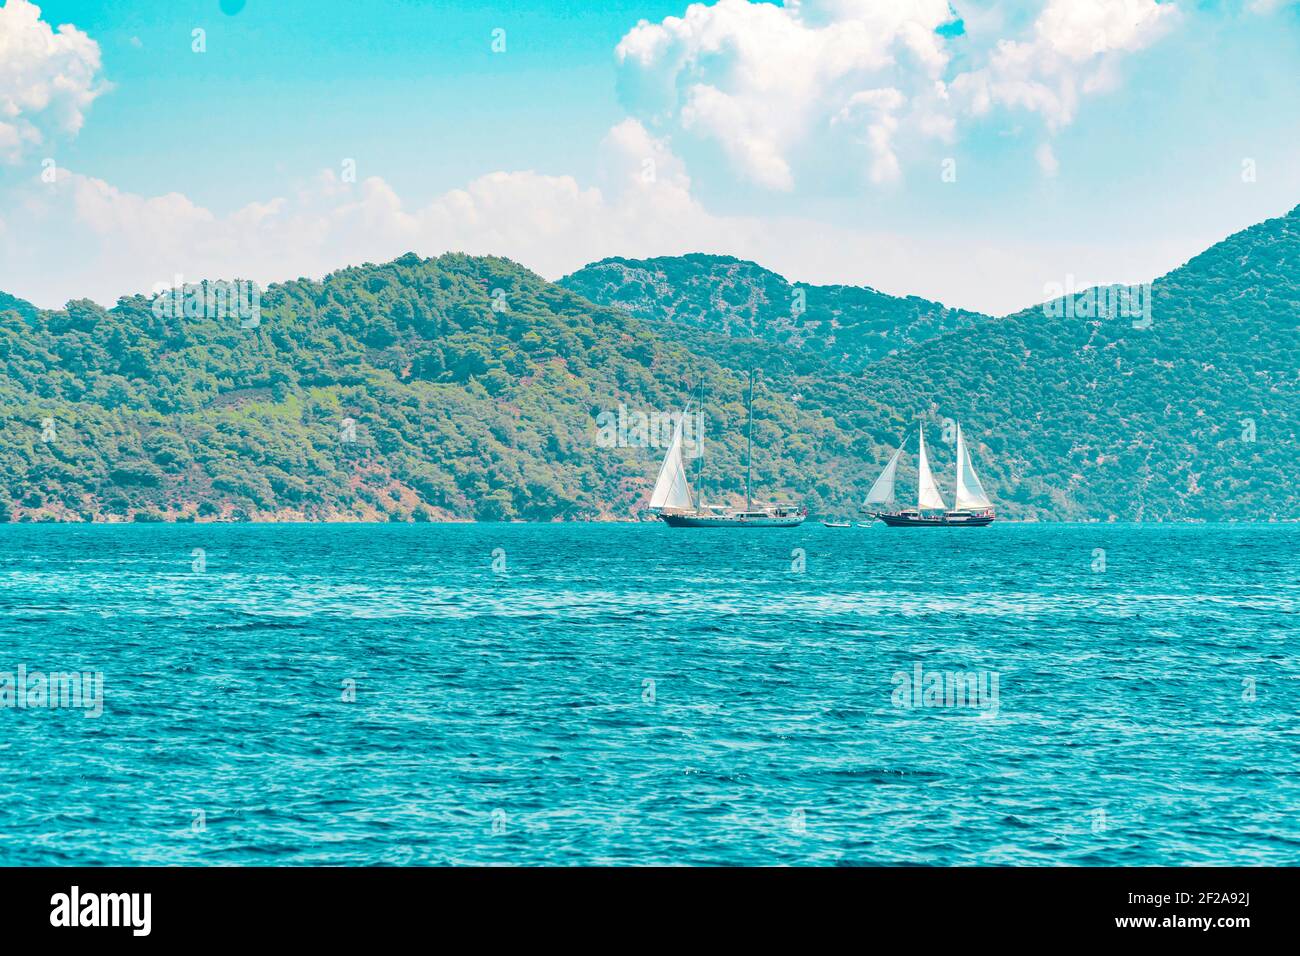 Sommerkonzept: Zwei weiße Segelyachten, die auf dem blauen Wasser der Ägäis vor einer grünen und felsigen Waldinsel schweben.natürlicher Hintergrund Stockfoto